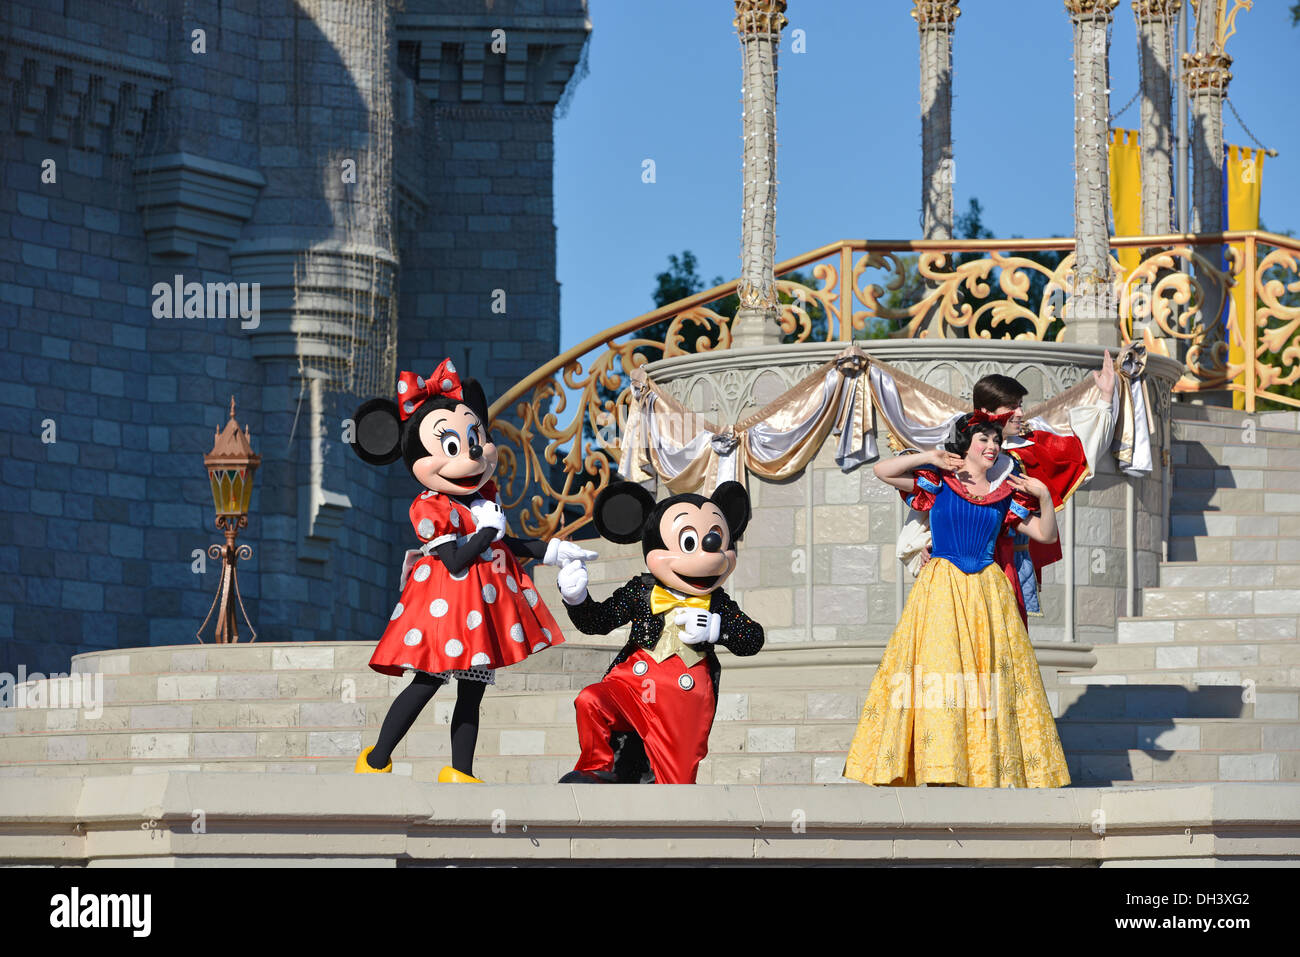 La souris de Mickey Minnie Blanche Neige et Prince, le long rêve Show, devant le Château de Cendrillon, Magic Kingdom, Disney World, en Floride Banque D'Images